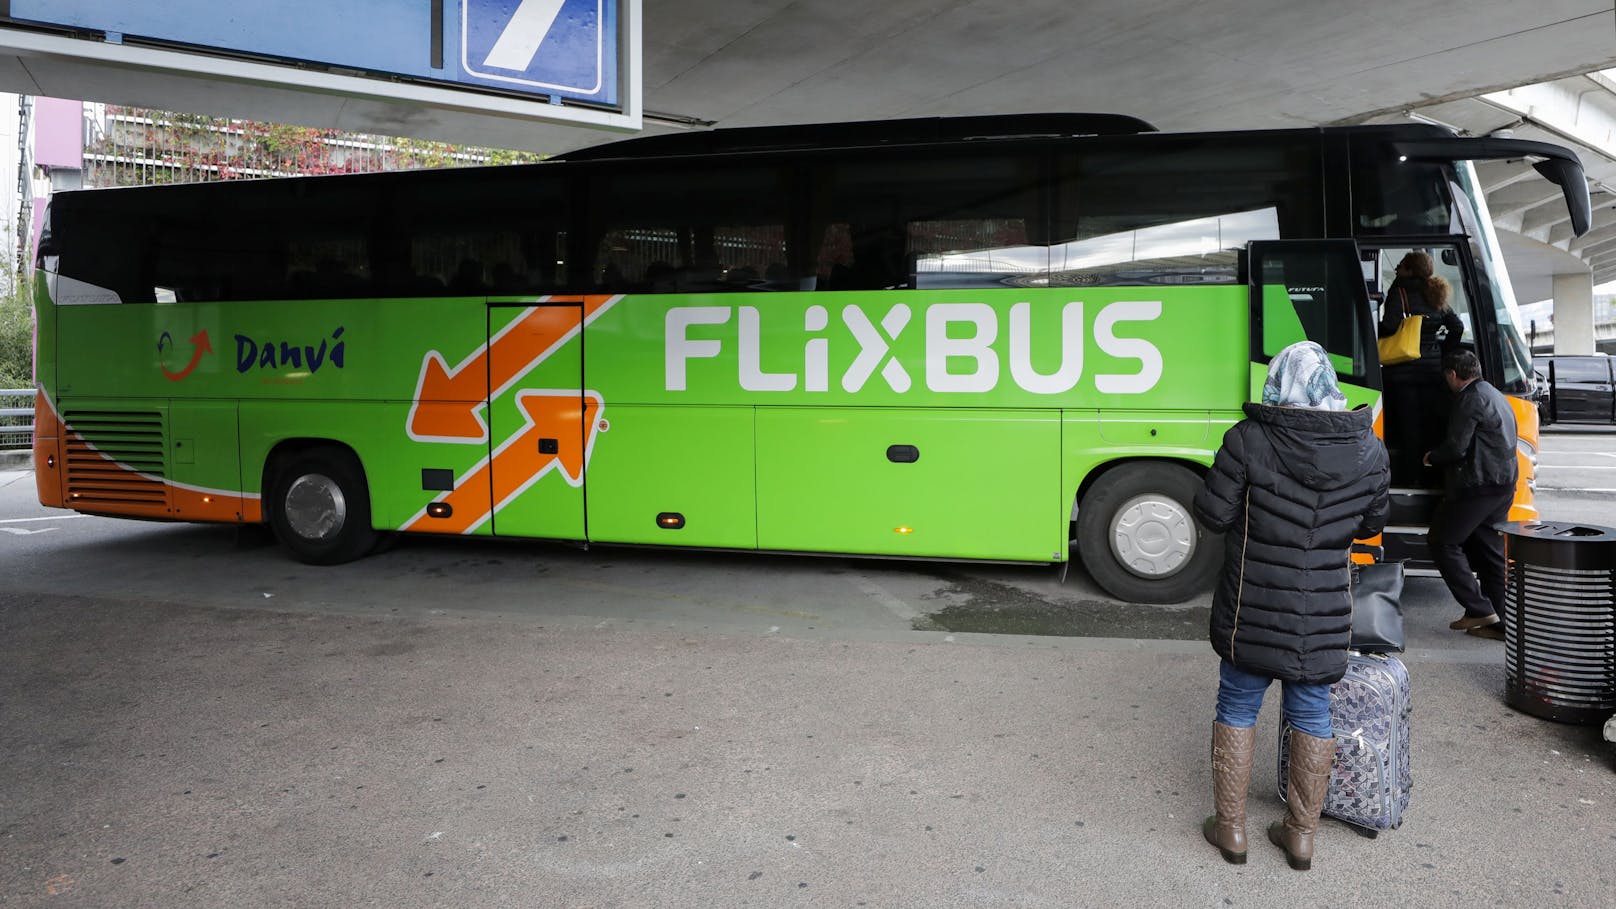 <strong>22.07.2024: AUA-Chaos! Wiener fahren 27 Stunden mit Flixbus heim.</strong> 200 Passagiere saßen in Nizza fest, weil AUA Flug stornierte. Urlauber hätten tagelang auf Ersatzflüge warten müssen – und nahmen den Flixbus! <a data-li-document-ref="120048927" href="https://www.heute.at/s/aua-chaos-wiener-fahren-27-stunden-mit-flixbus-heim-120048927">Weiterlesen &gt;&gt;&gt;</a><a data-li-document-ref="120048847" href="https://www.heute.at/s/hat-keiner-gecheckt-fendrich-verraet-grosse-schummelei-120048847"></a>